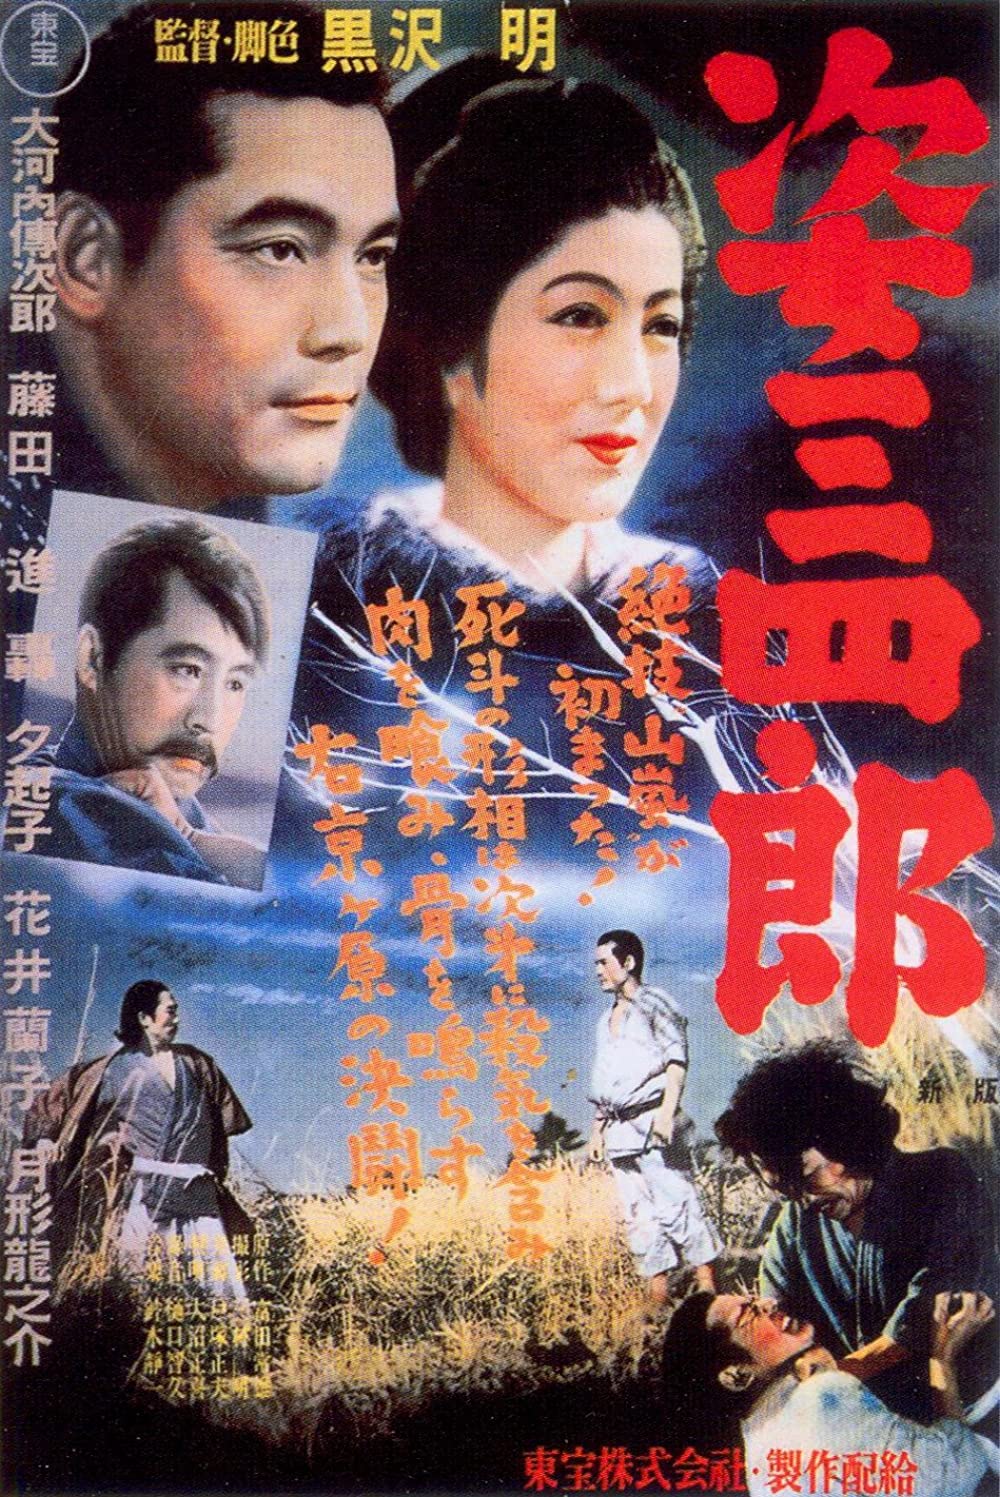 ดูหนังออนไลน์ฟรี Sanshiro Sugata (1943) ซันชิโร สุกาตา